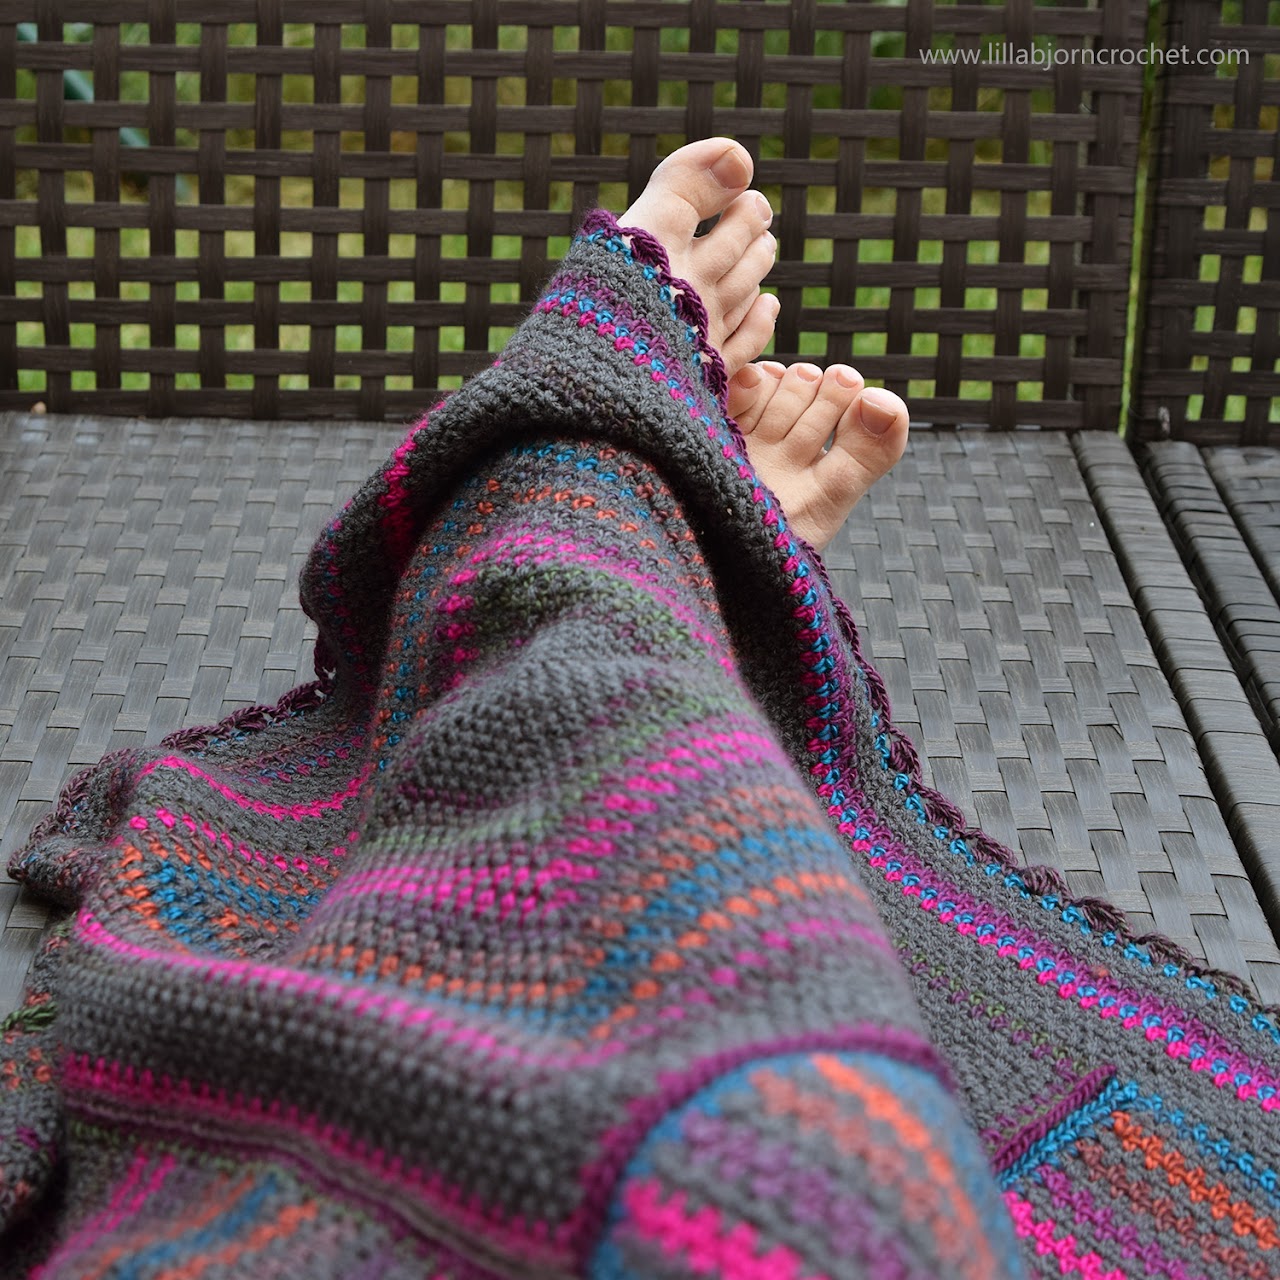 Around the World Blanket - #free crochet pattern by www.lillabjorncrochet.com